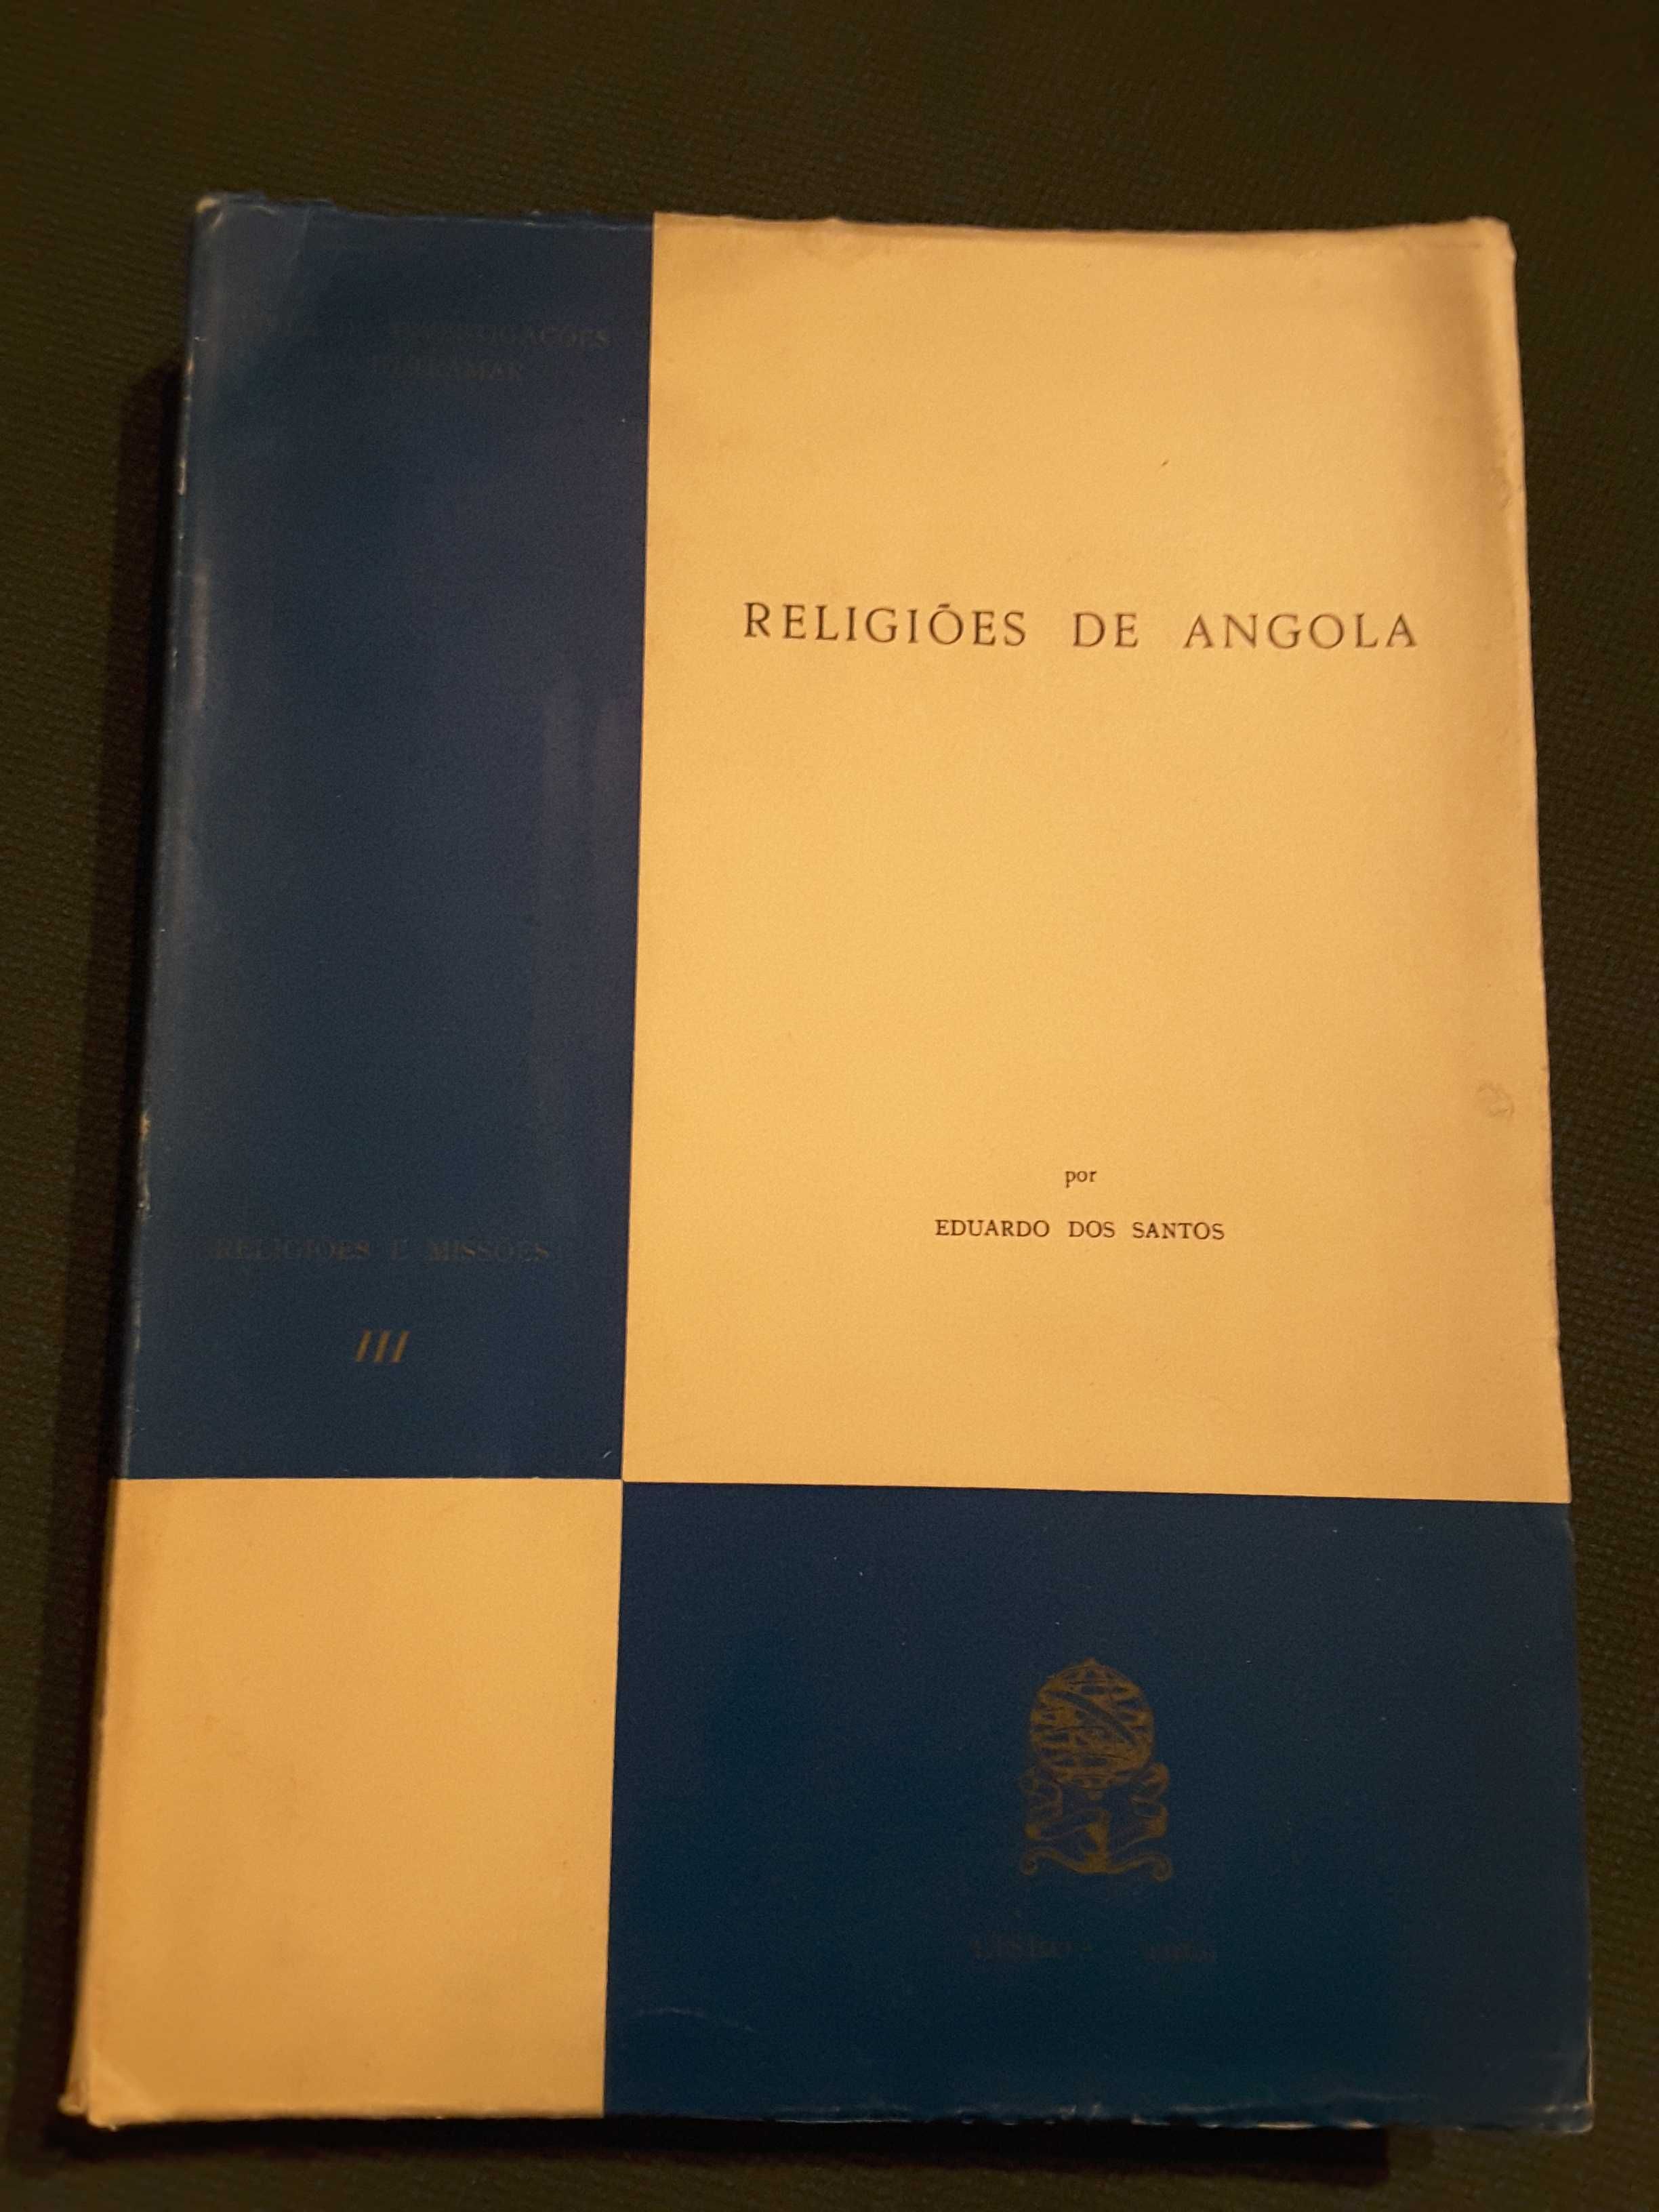 Prática e Utensilagem Agrícolas na Guiné / Religiões de Angola